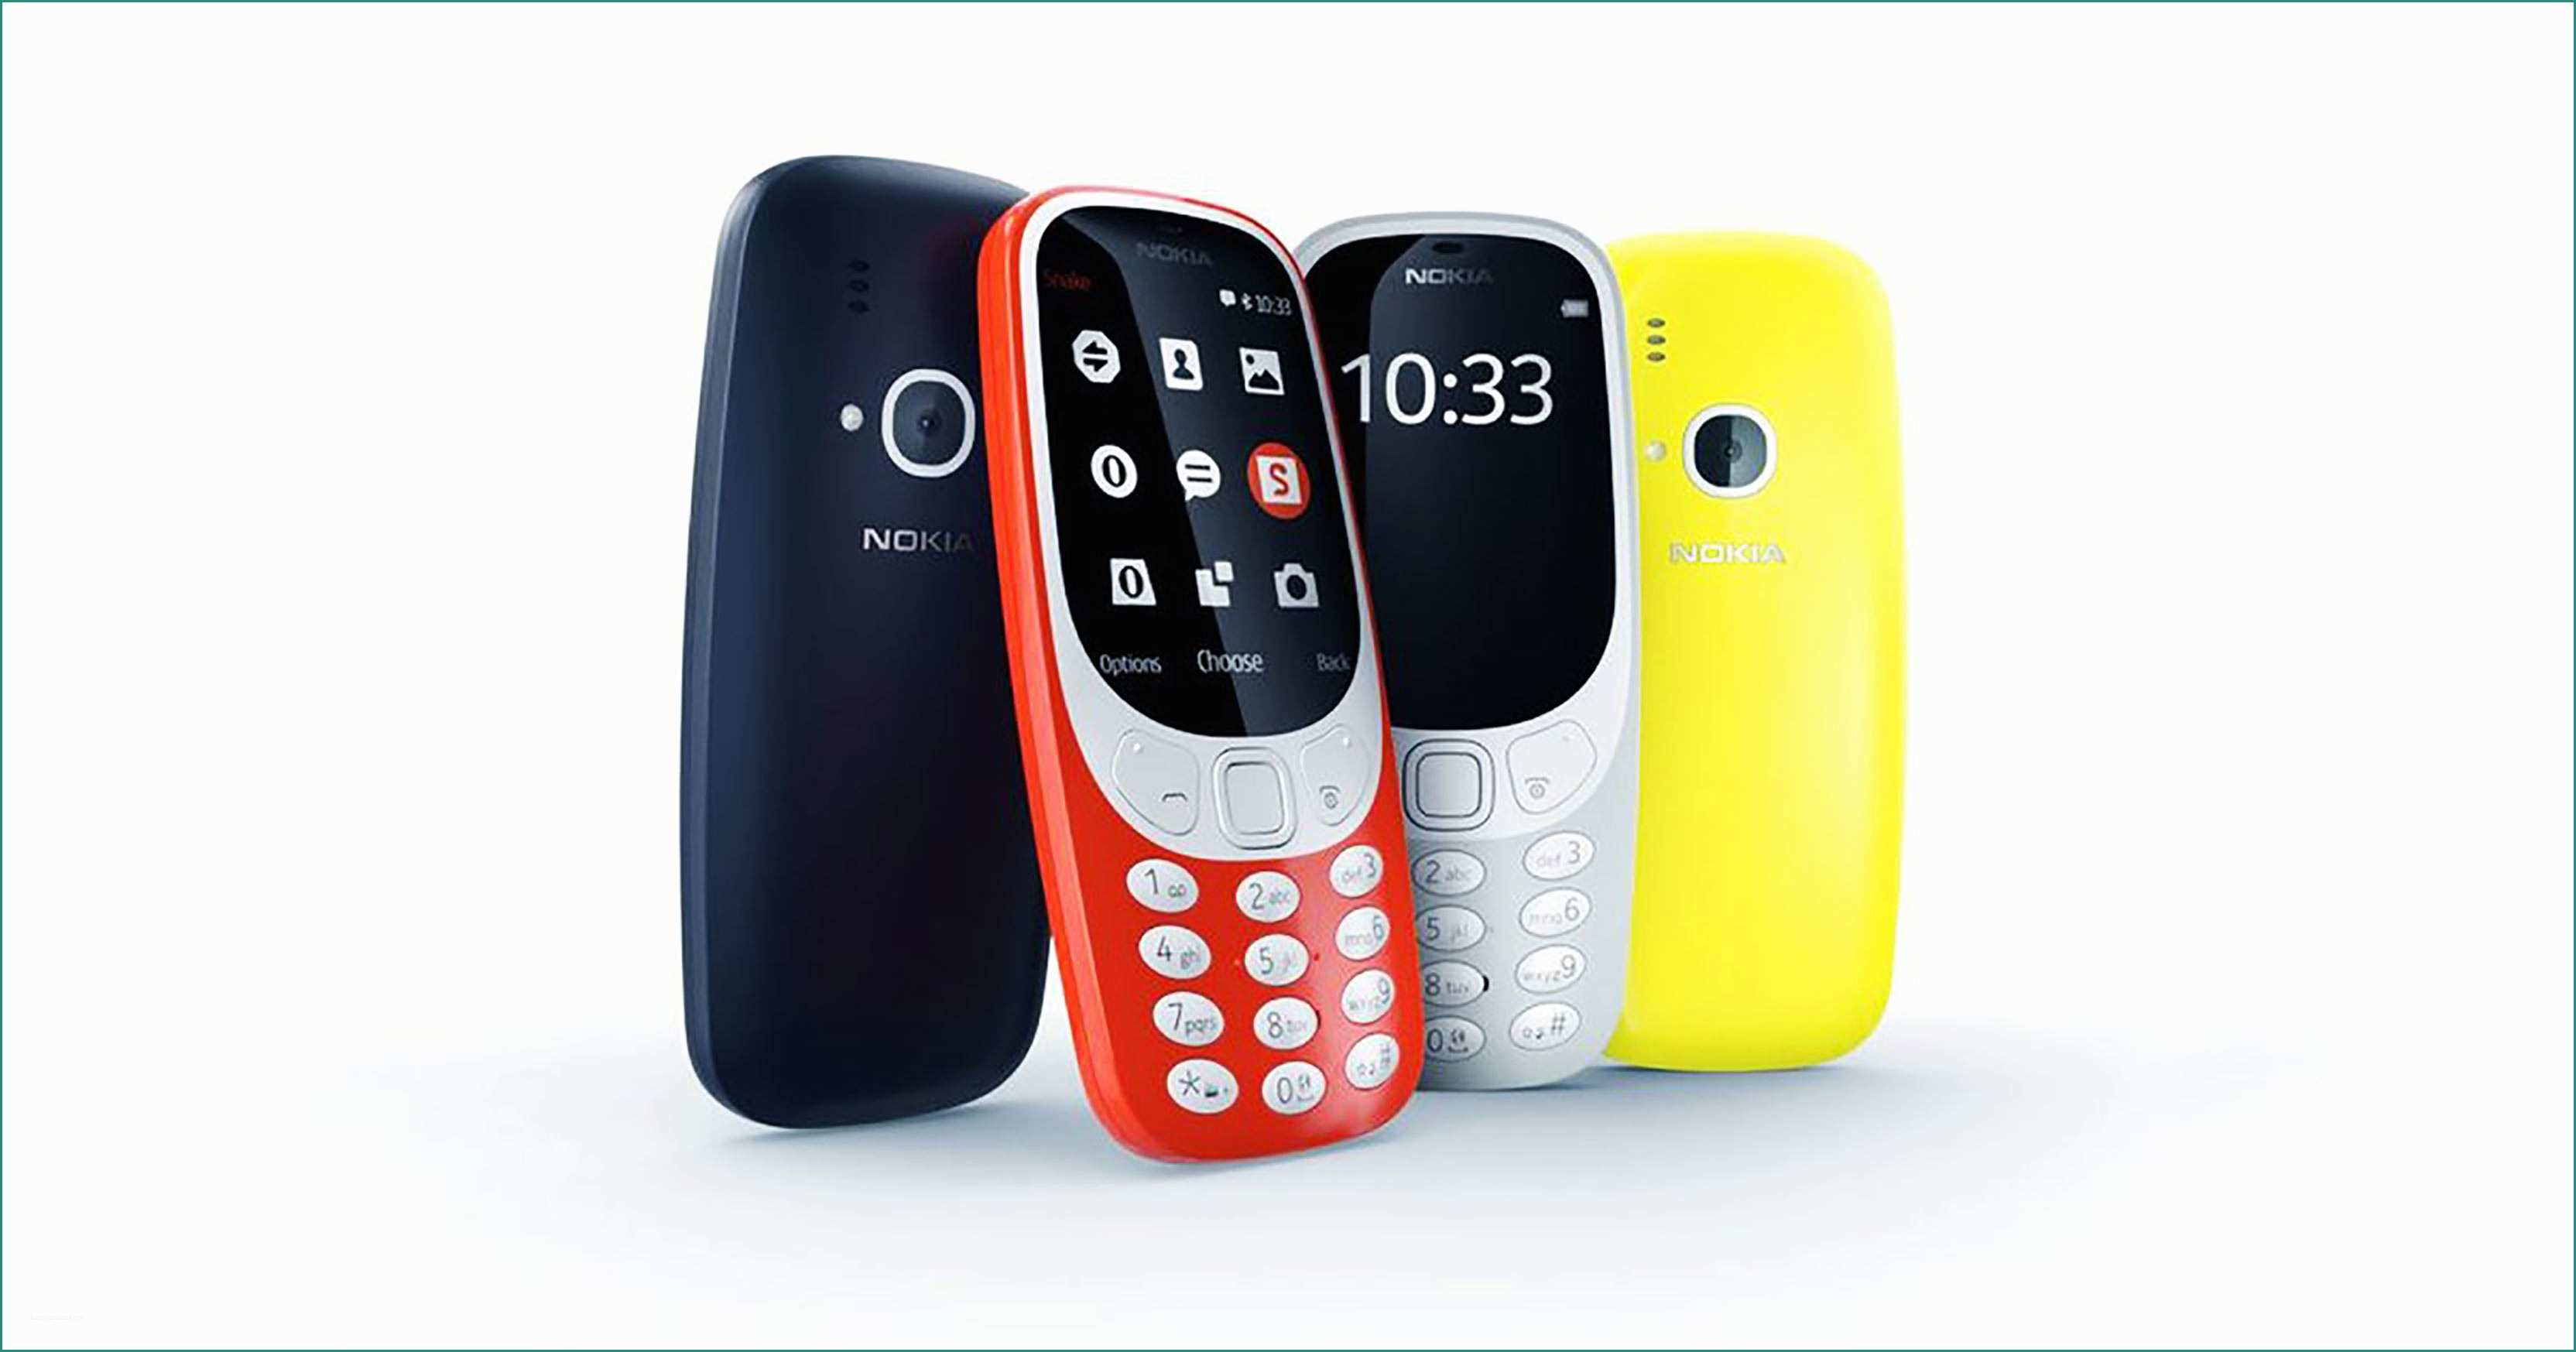 Case Mobili Moderne E Nokia 3310 3g Nokia 1 Nokia 3 Nokia 5 Nokia 6 1 now Available In